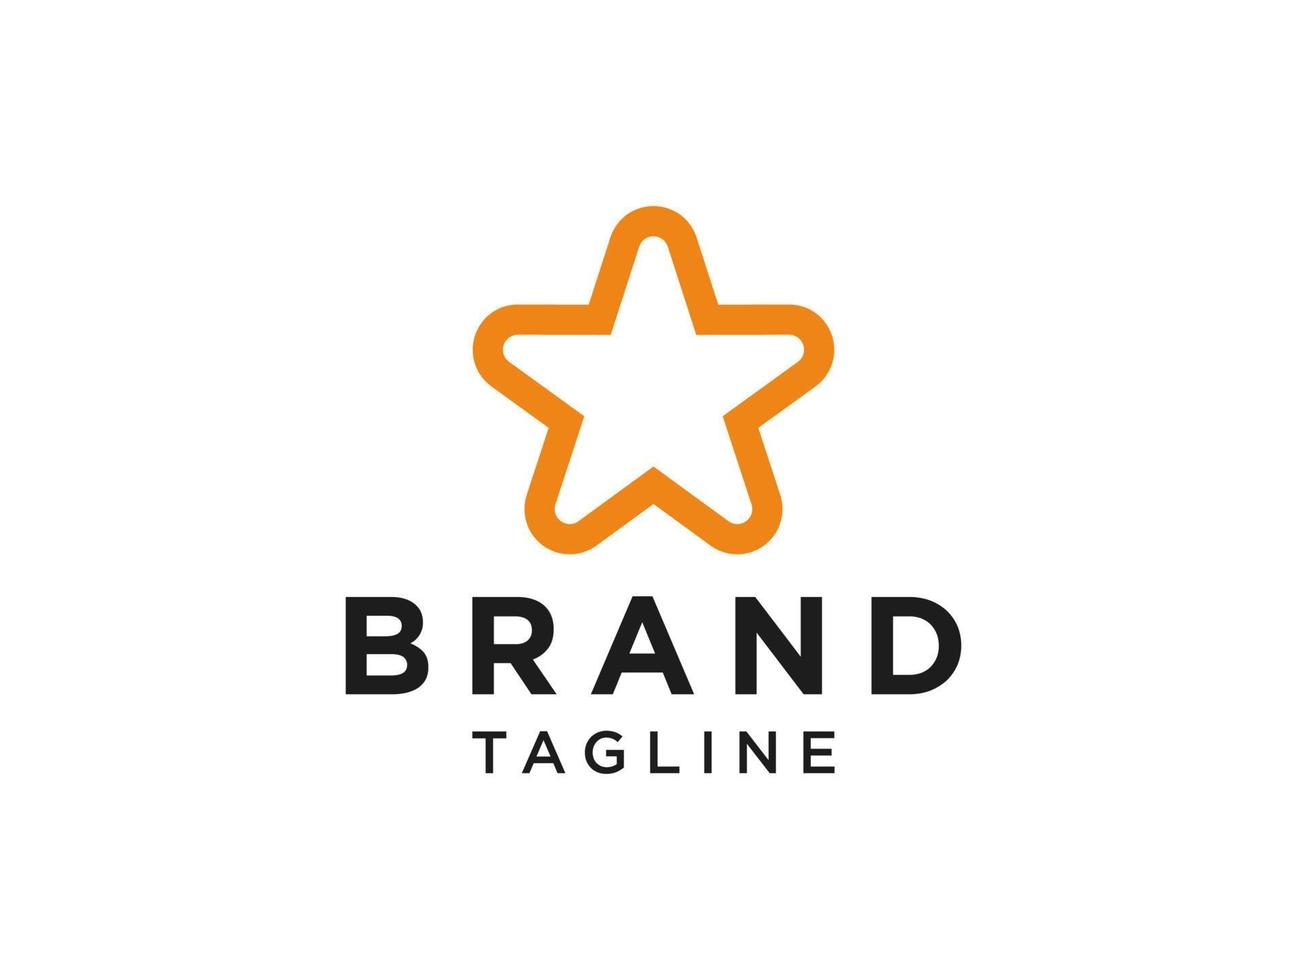 ster schoon logo. oranje vorm sterpictogram met lijn combinatie geïsoleerd op een witte achtergrond. bruikbaar voor bedrijfs- en merklogo's. platte vector logo-ontwerpsjabloon sjabloon.